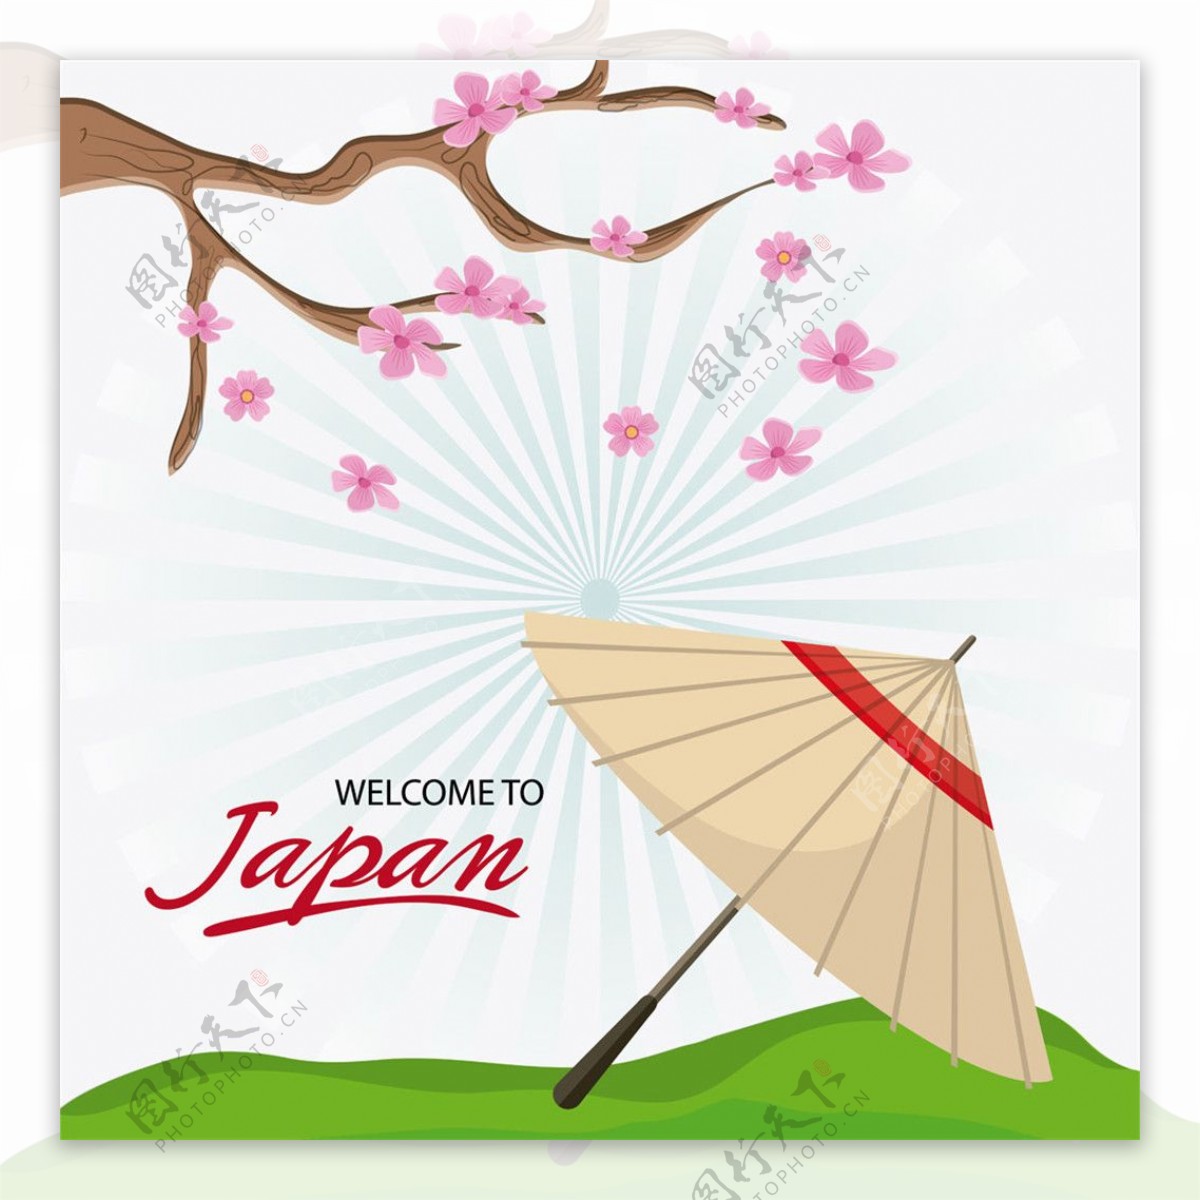 樱花树下的雨伞图片